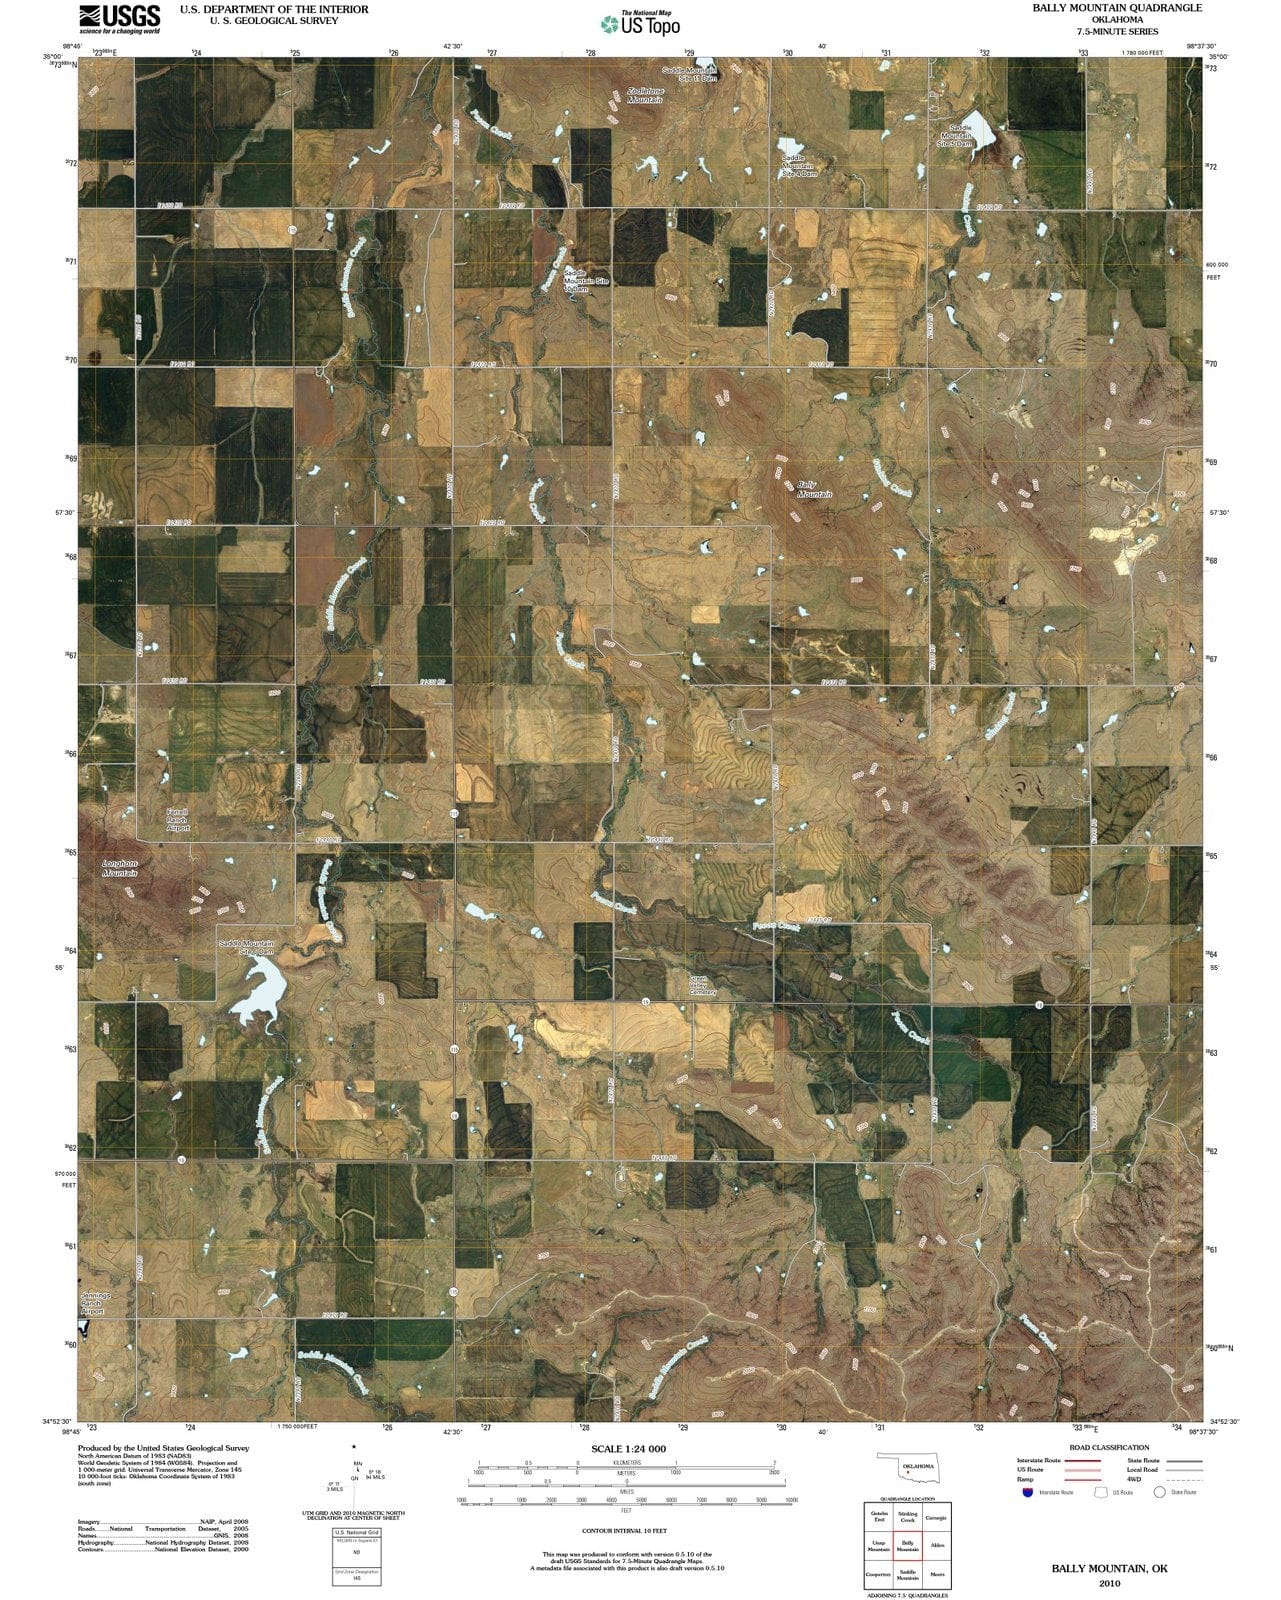 2010 Bally Mountain, OK - Oklahoma - USGS Topographic Map